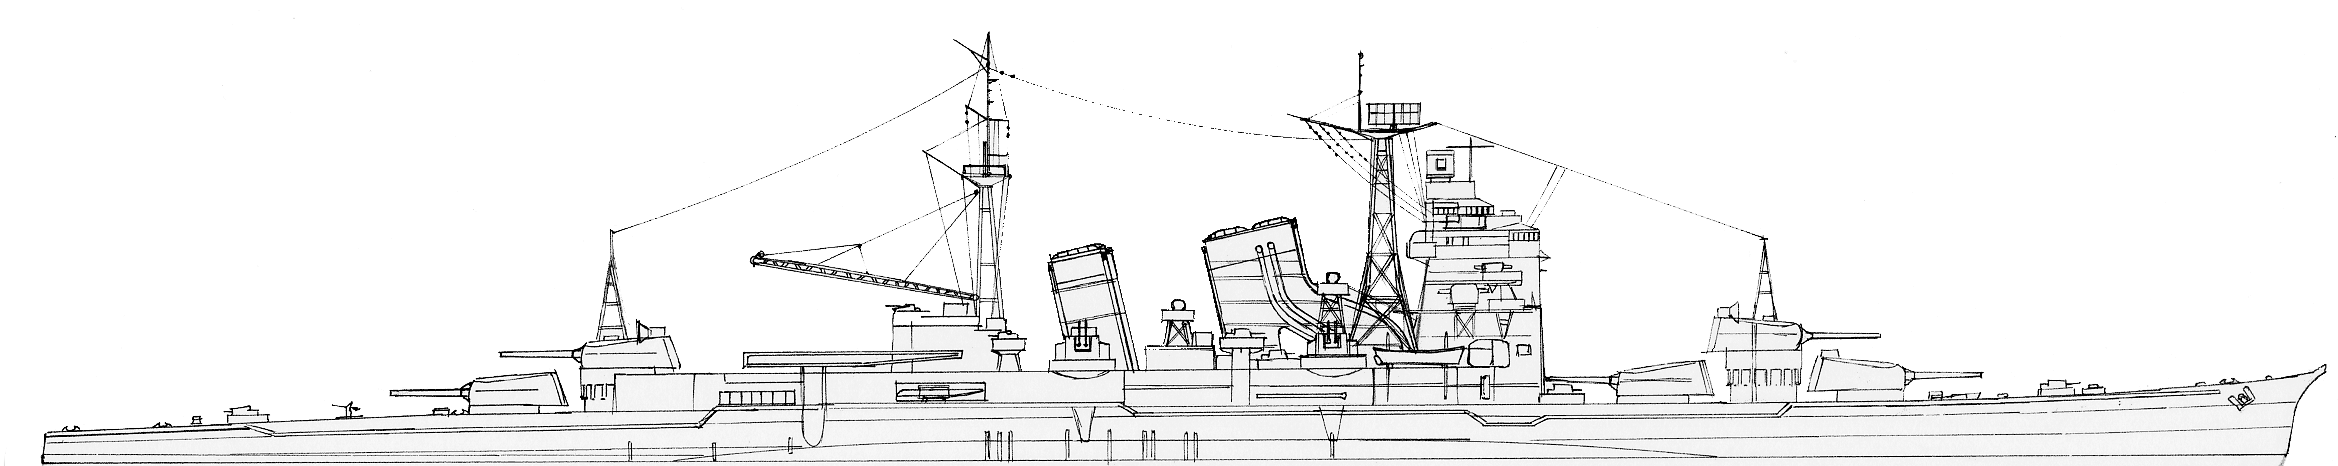 Nachi 1945 - author's schematics